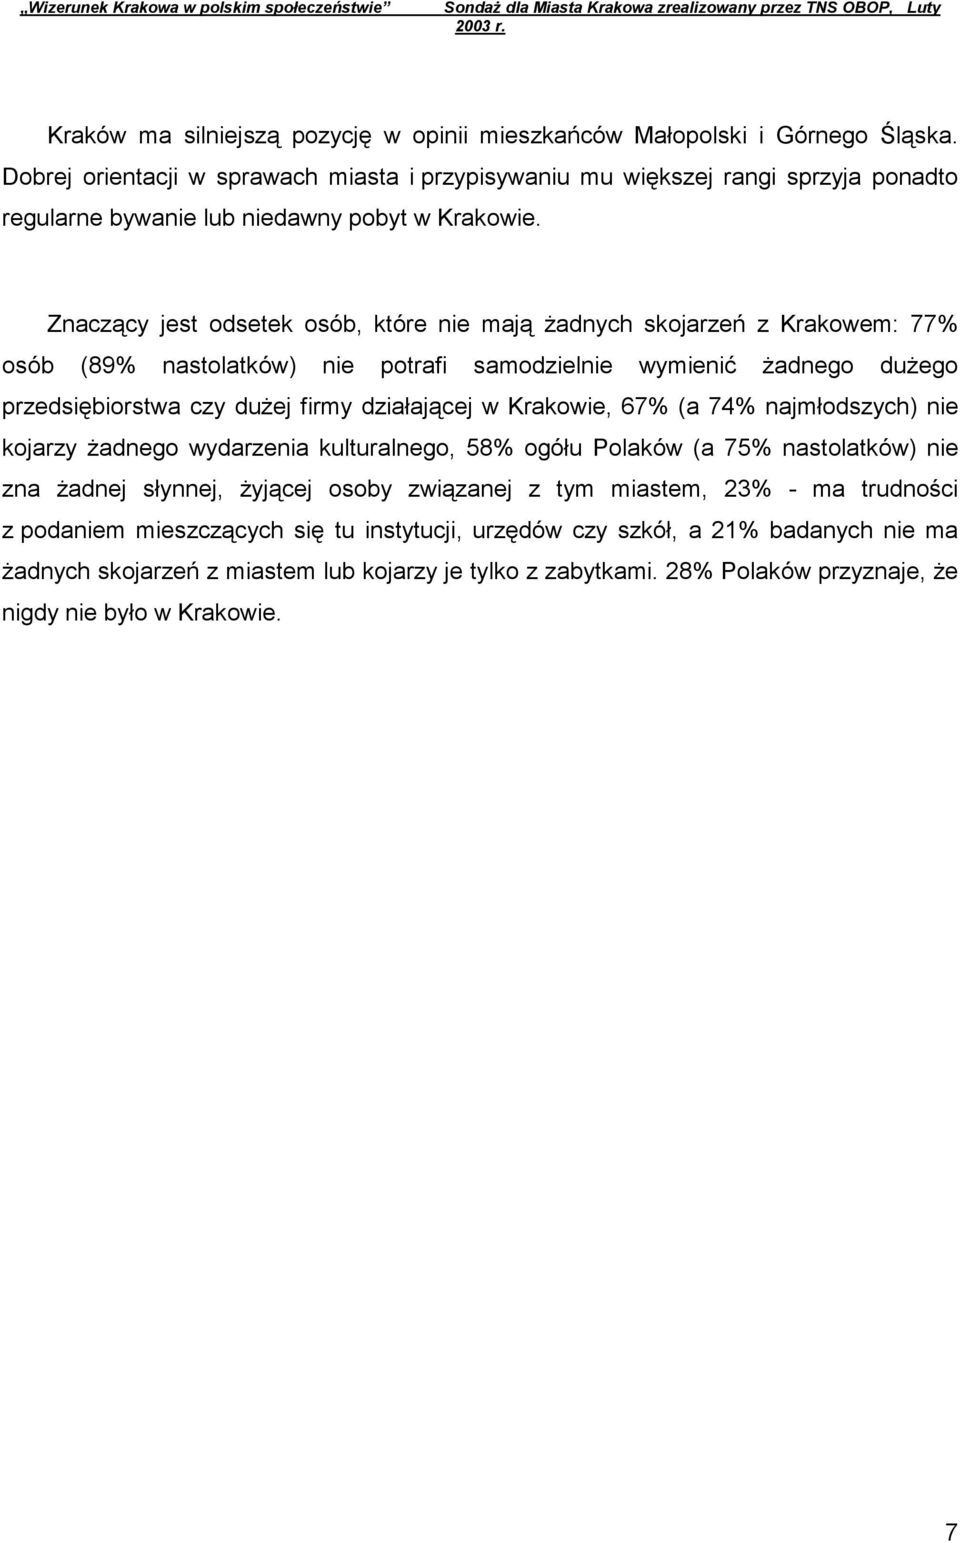 Znaczący jest odsetek osób, które nie mają żadnych skojarzeń z Krakowem: 77% osób (89% nastolatków) nie potrafi samodzielnie wymienić żadnego dużego przedsiębiorstwa czy dużej firmy działającej w